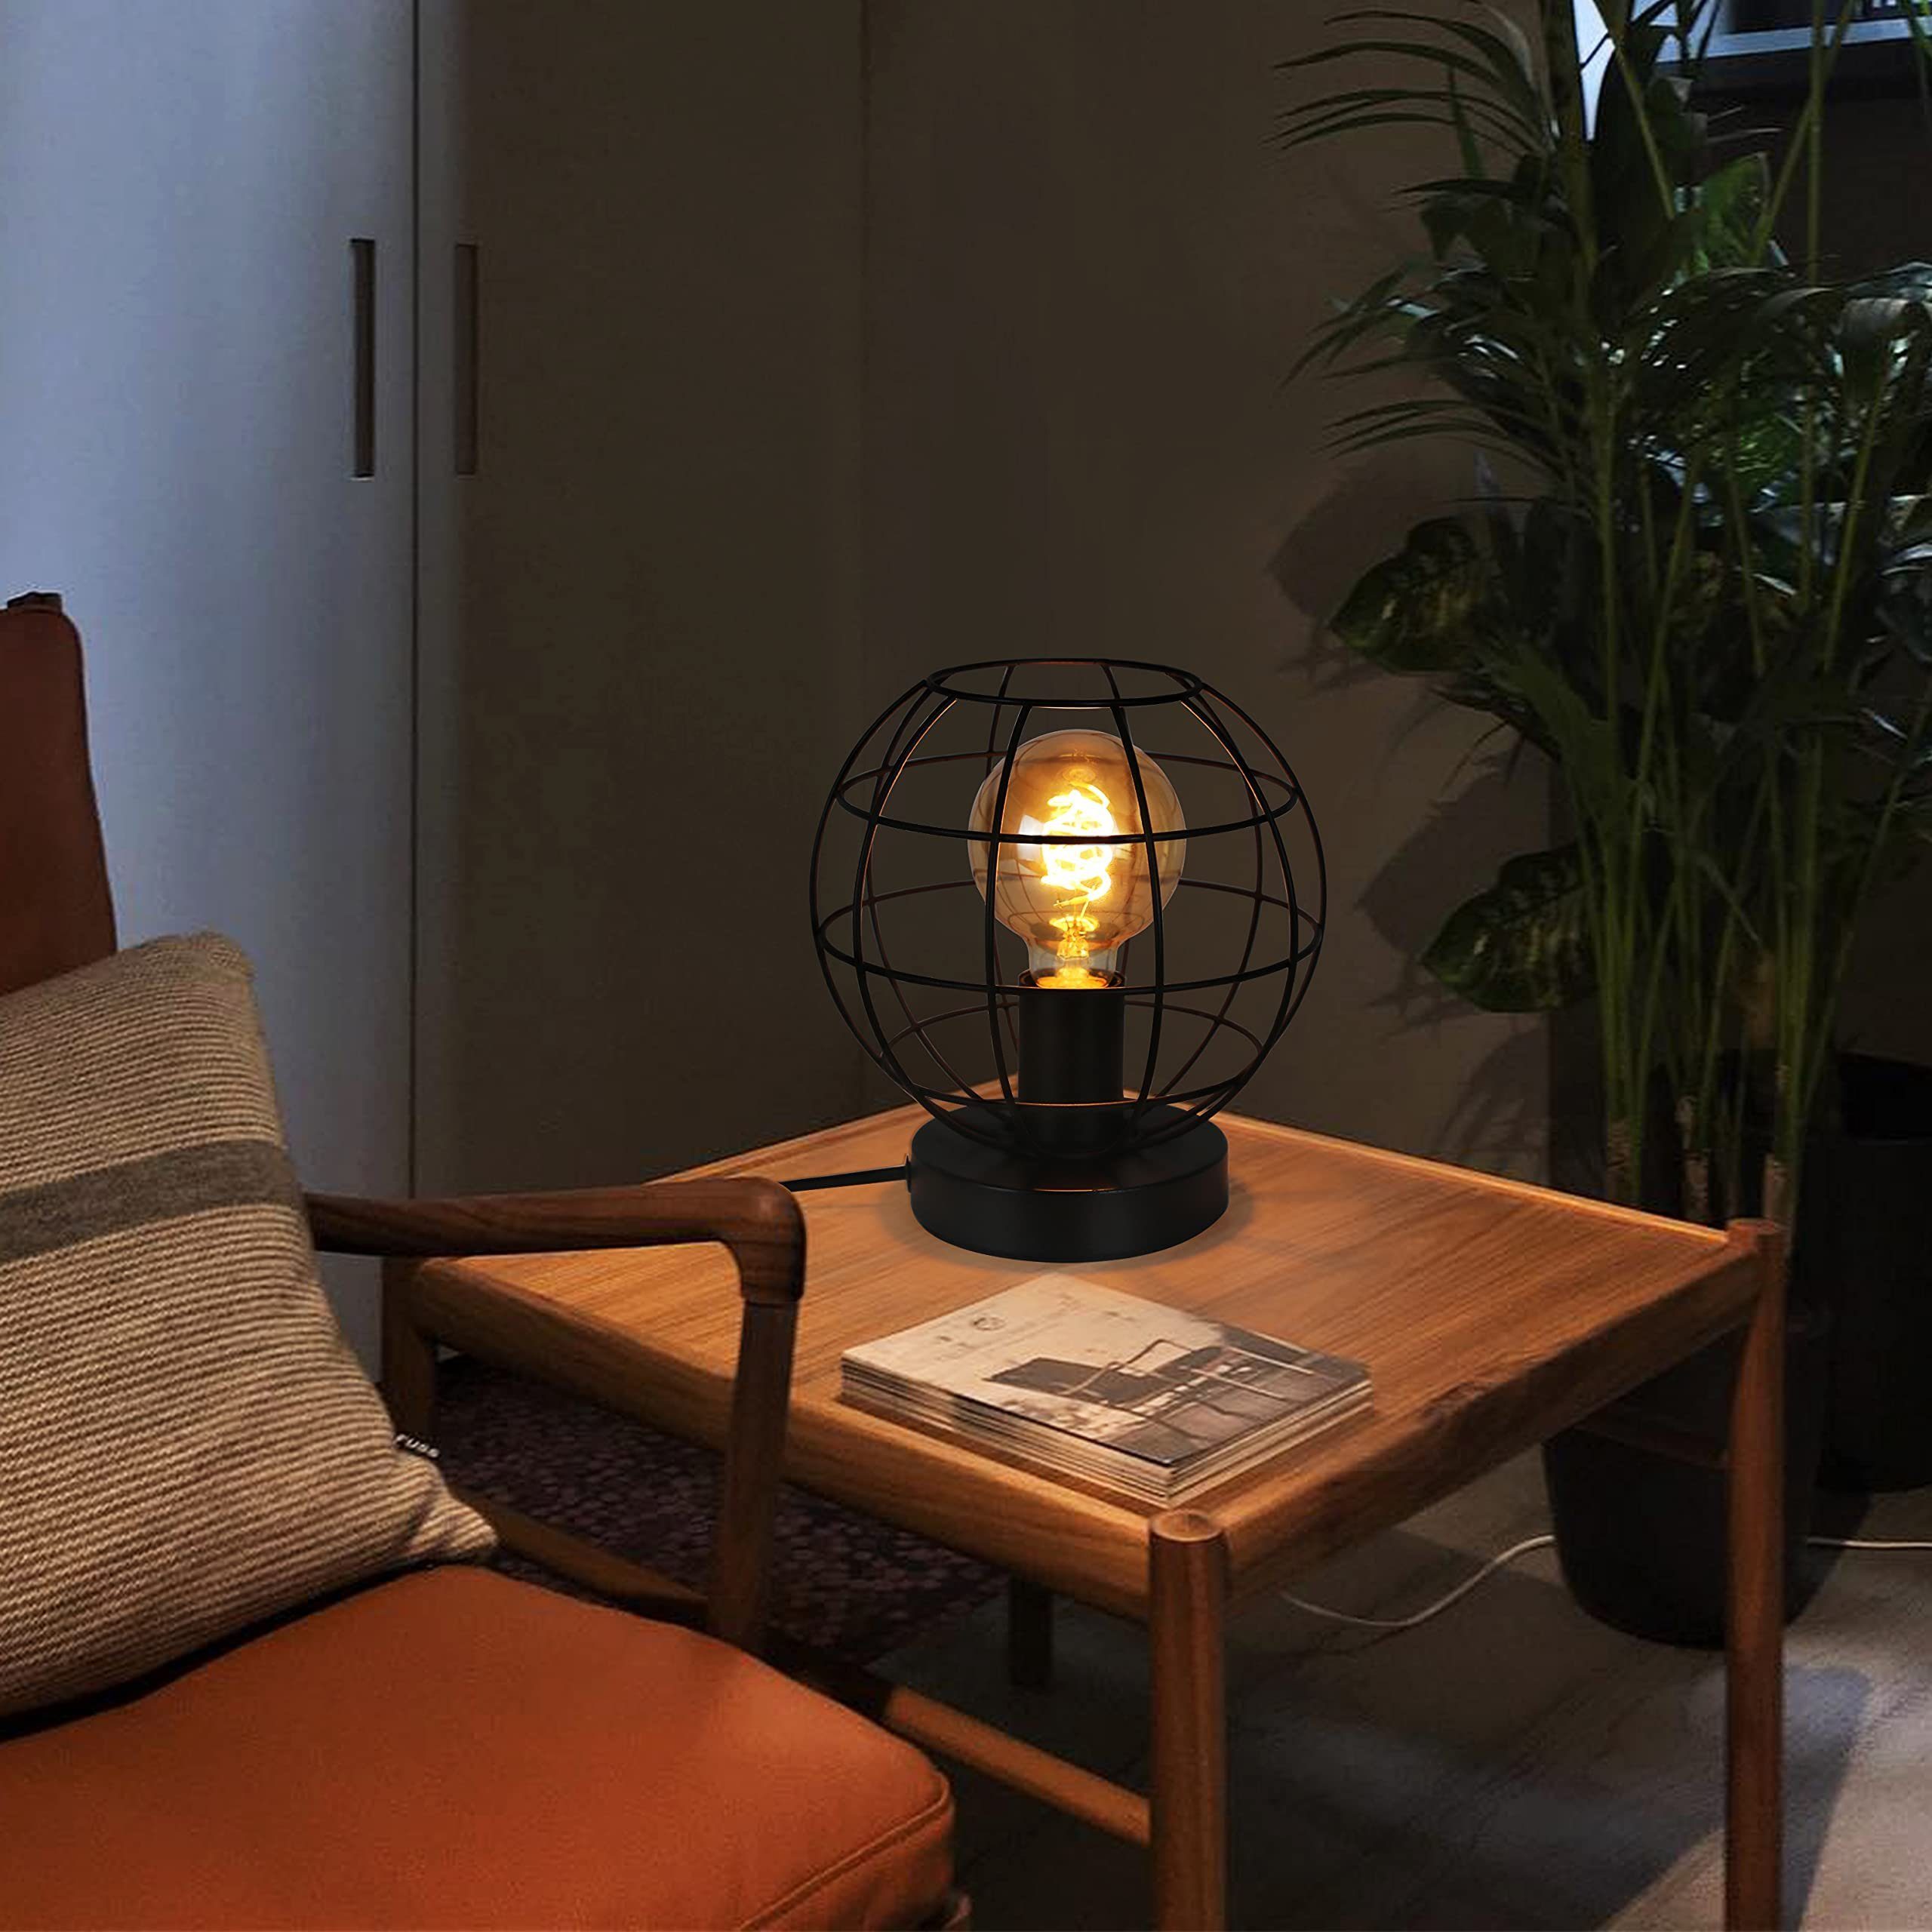 Das Café in vitro Feuer Glühbirne TD Tischlampe-Massivholz Holz Persönlichkeit kreative alte Lampen Retro Schreibtischlampe 